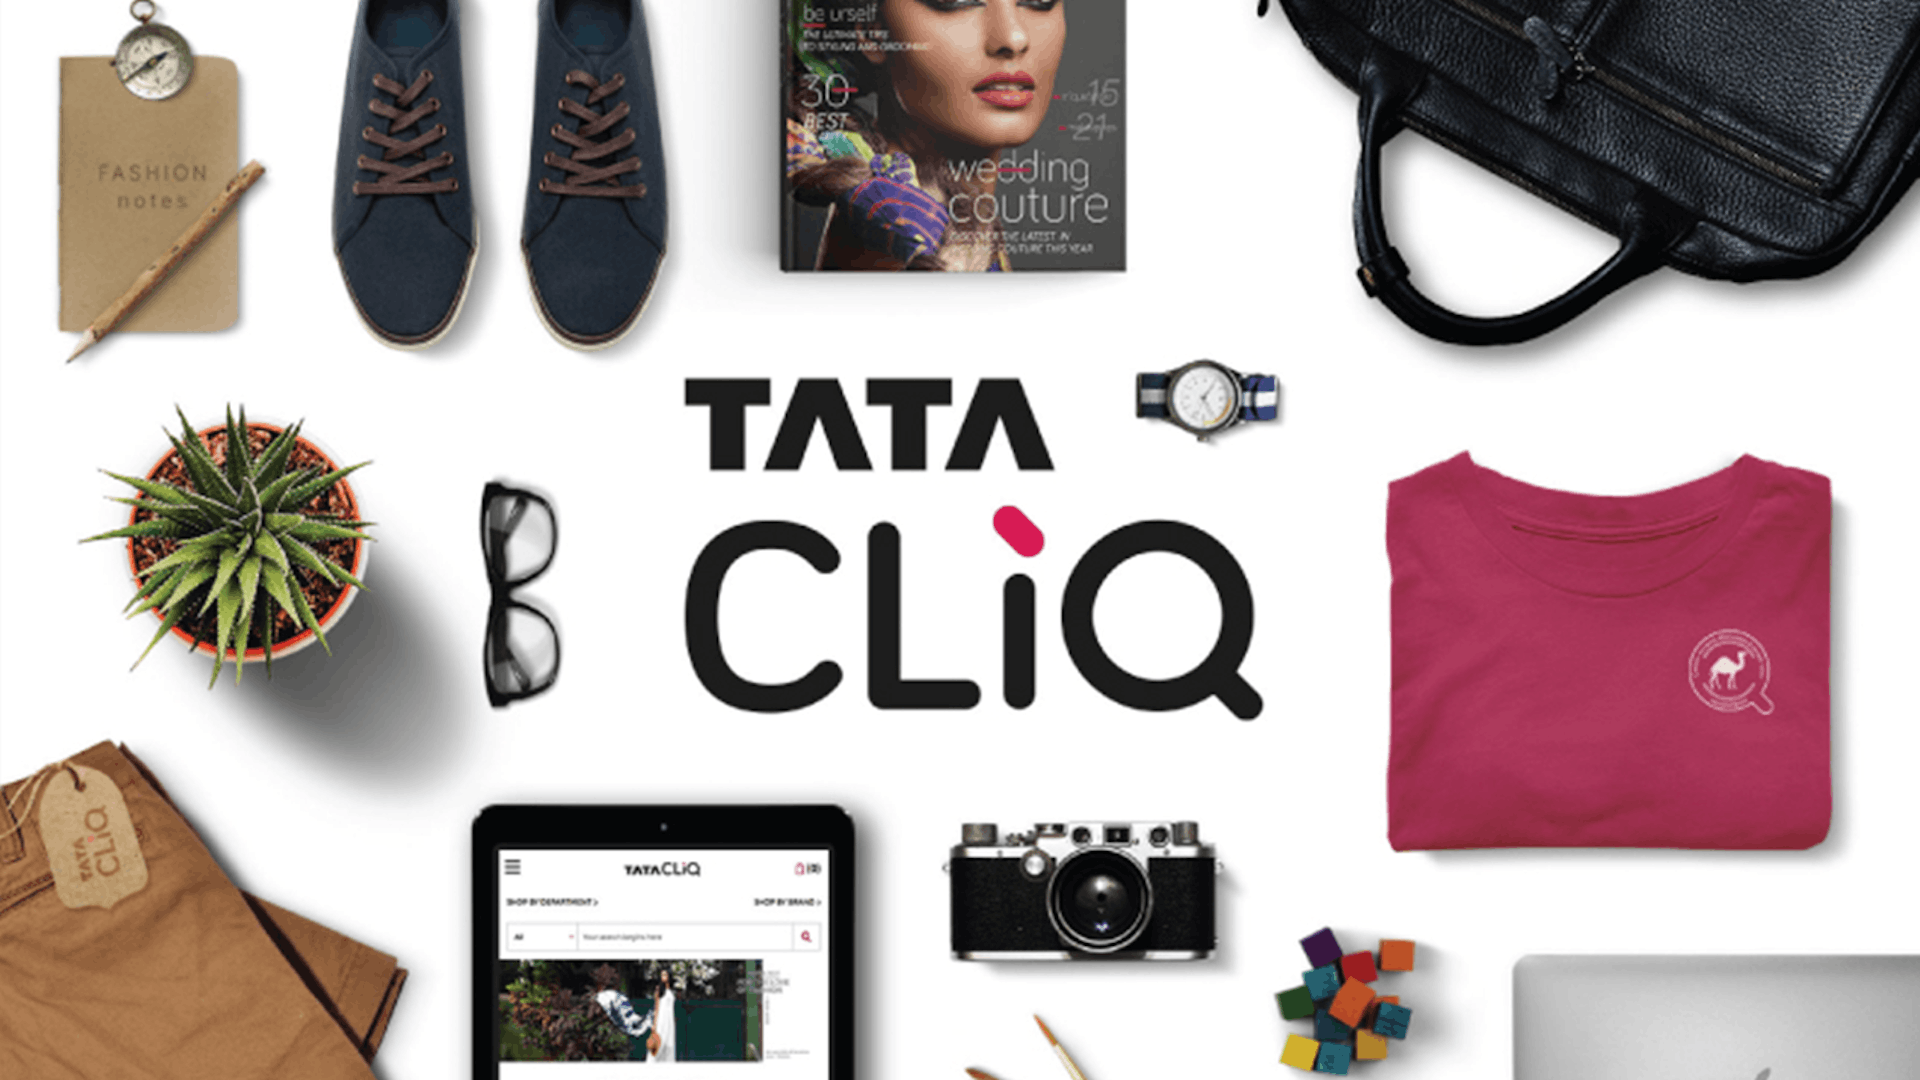 Photo of Tata Cliq products